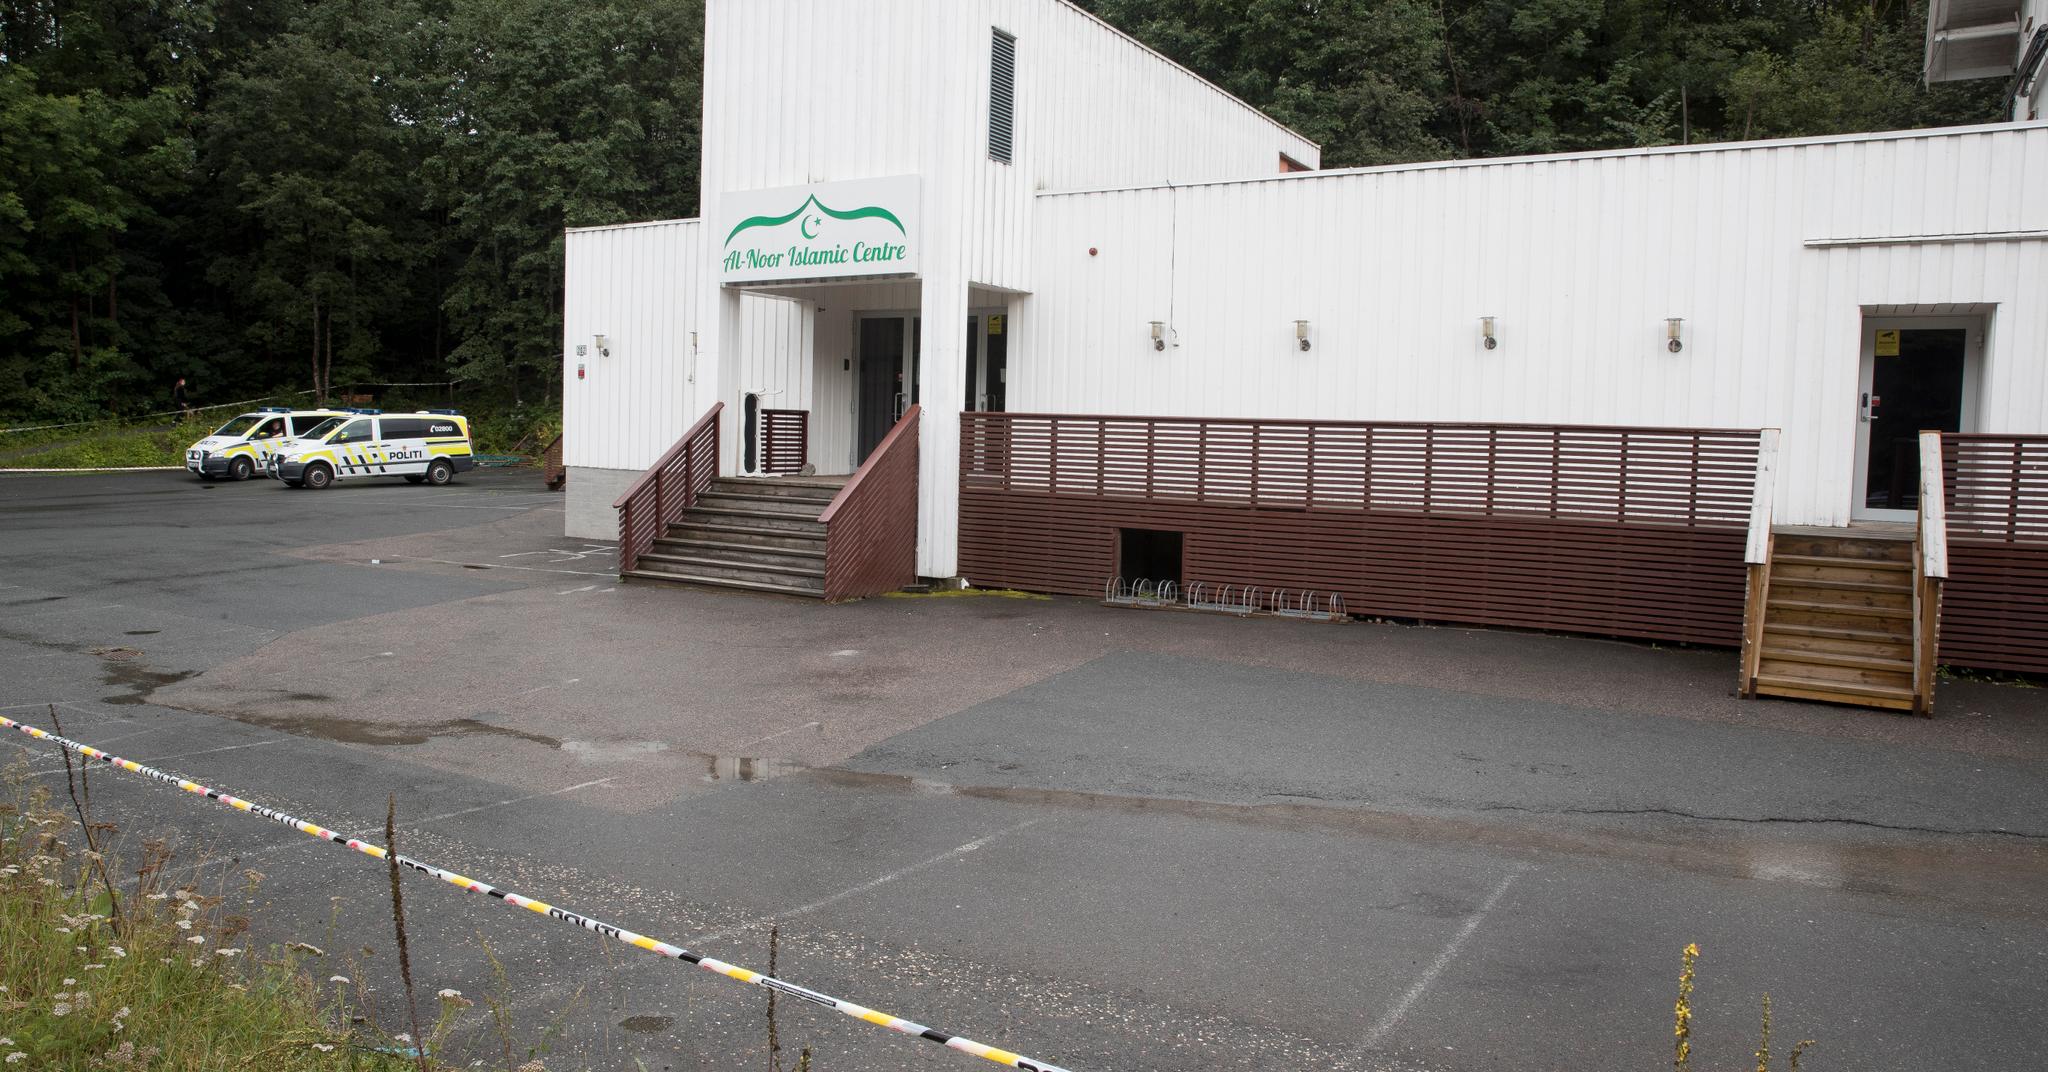 Menigheten i Al-Noor Islamic Centre i Bærum, som lørdag ble angrepet av den 21-årige terrorsiktede mannen som også er siktet for å ha drept sin stesøster.